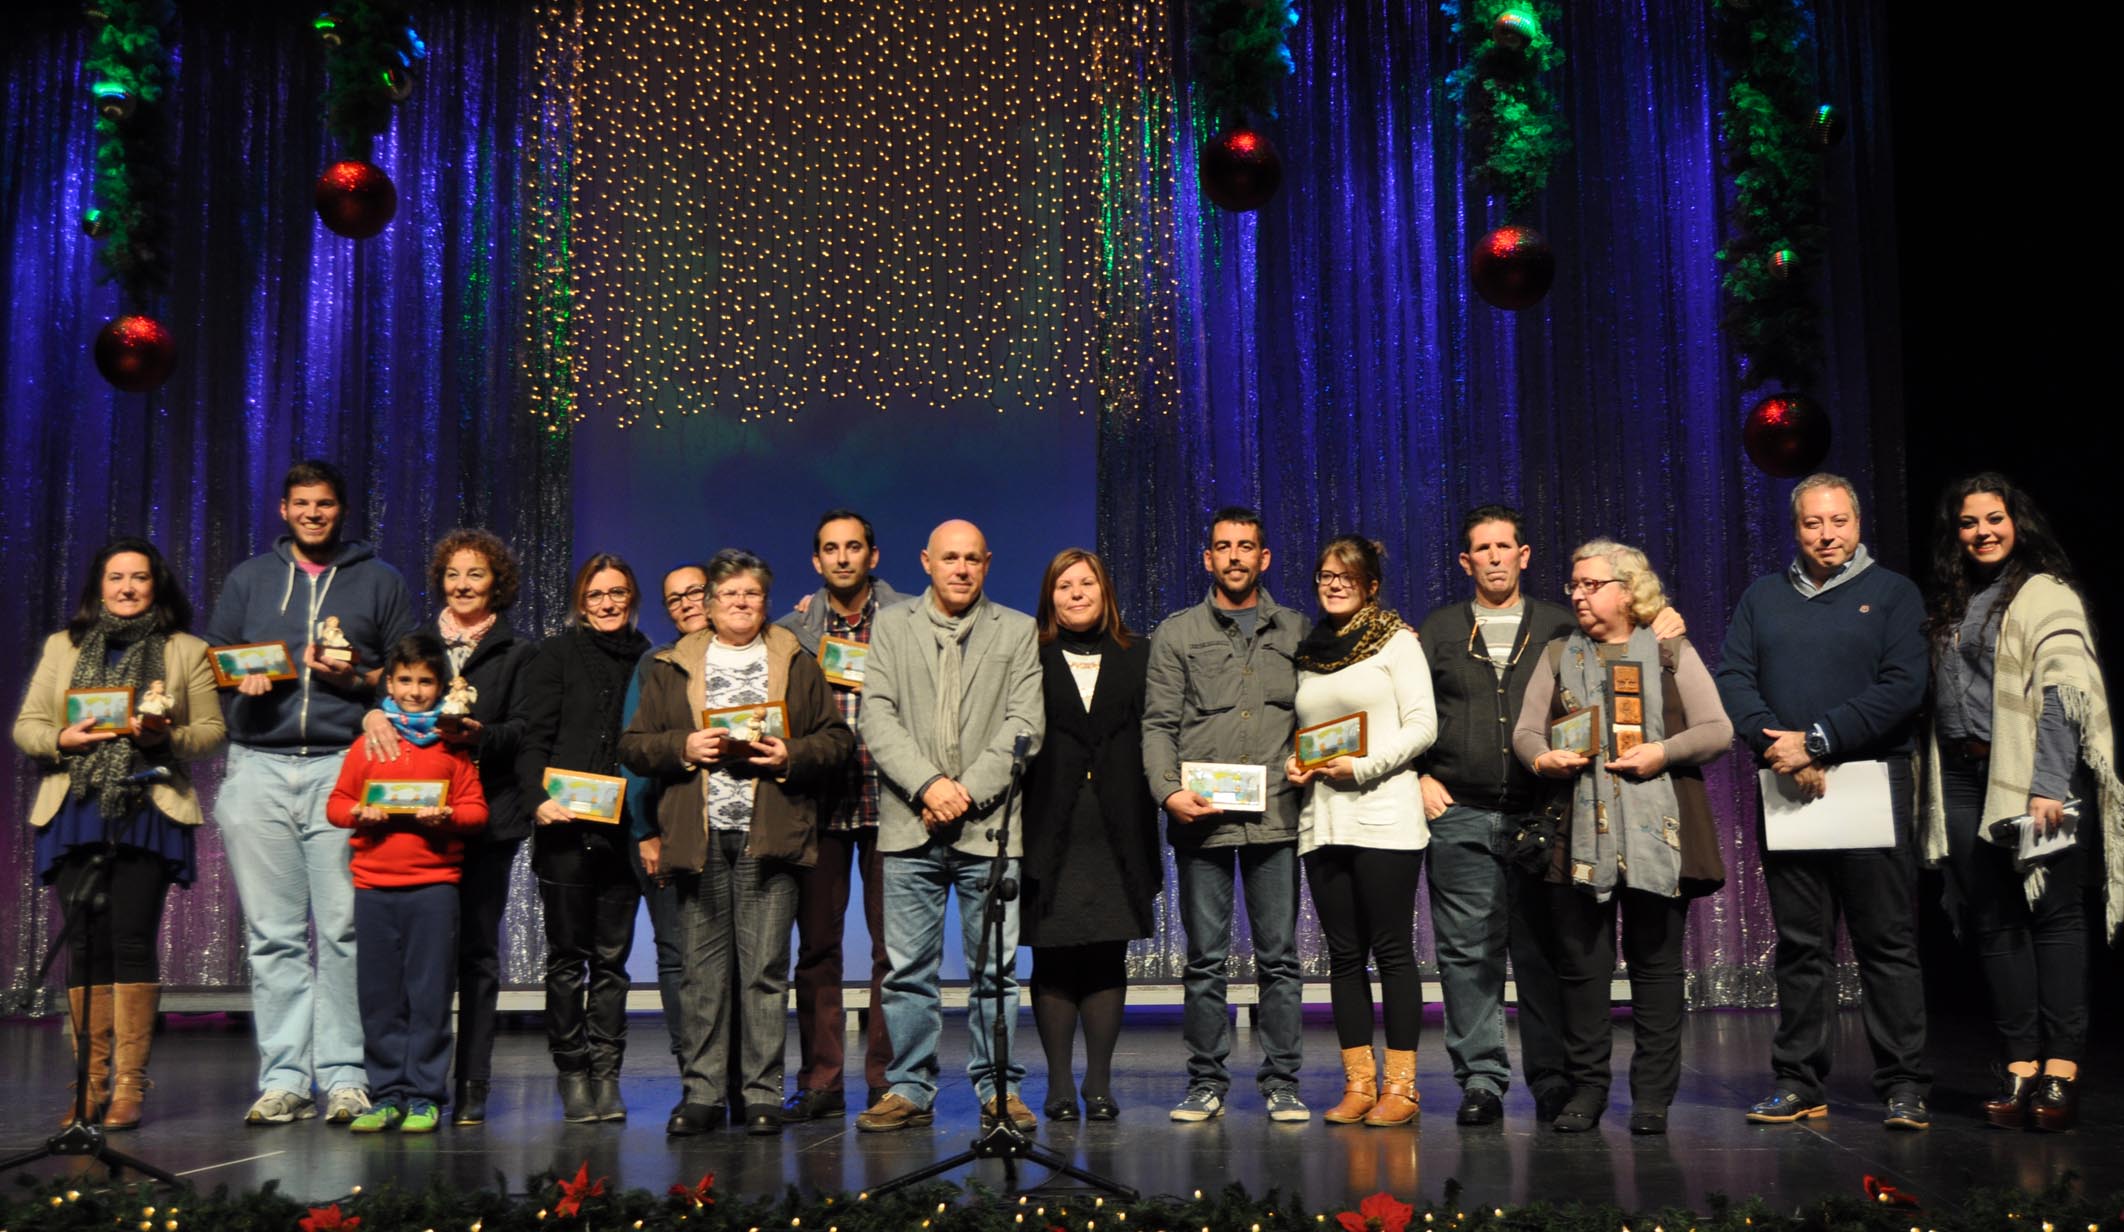 Ganadores y participantes del Concurso de Belenes junto a las autoridades locales